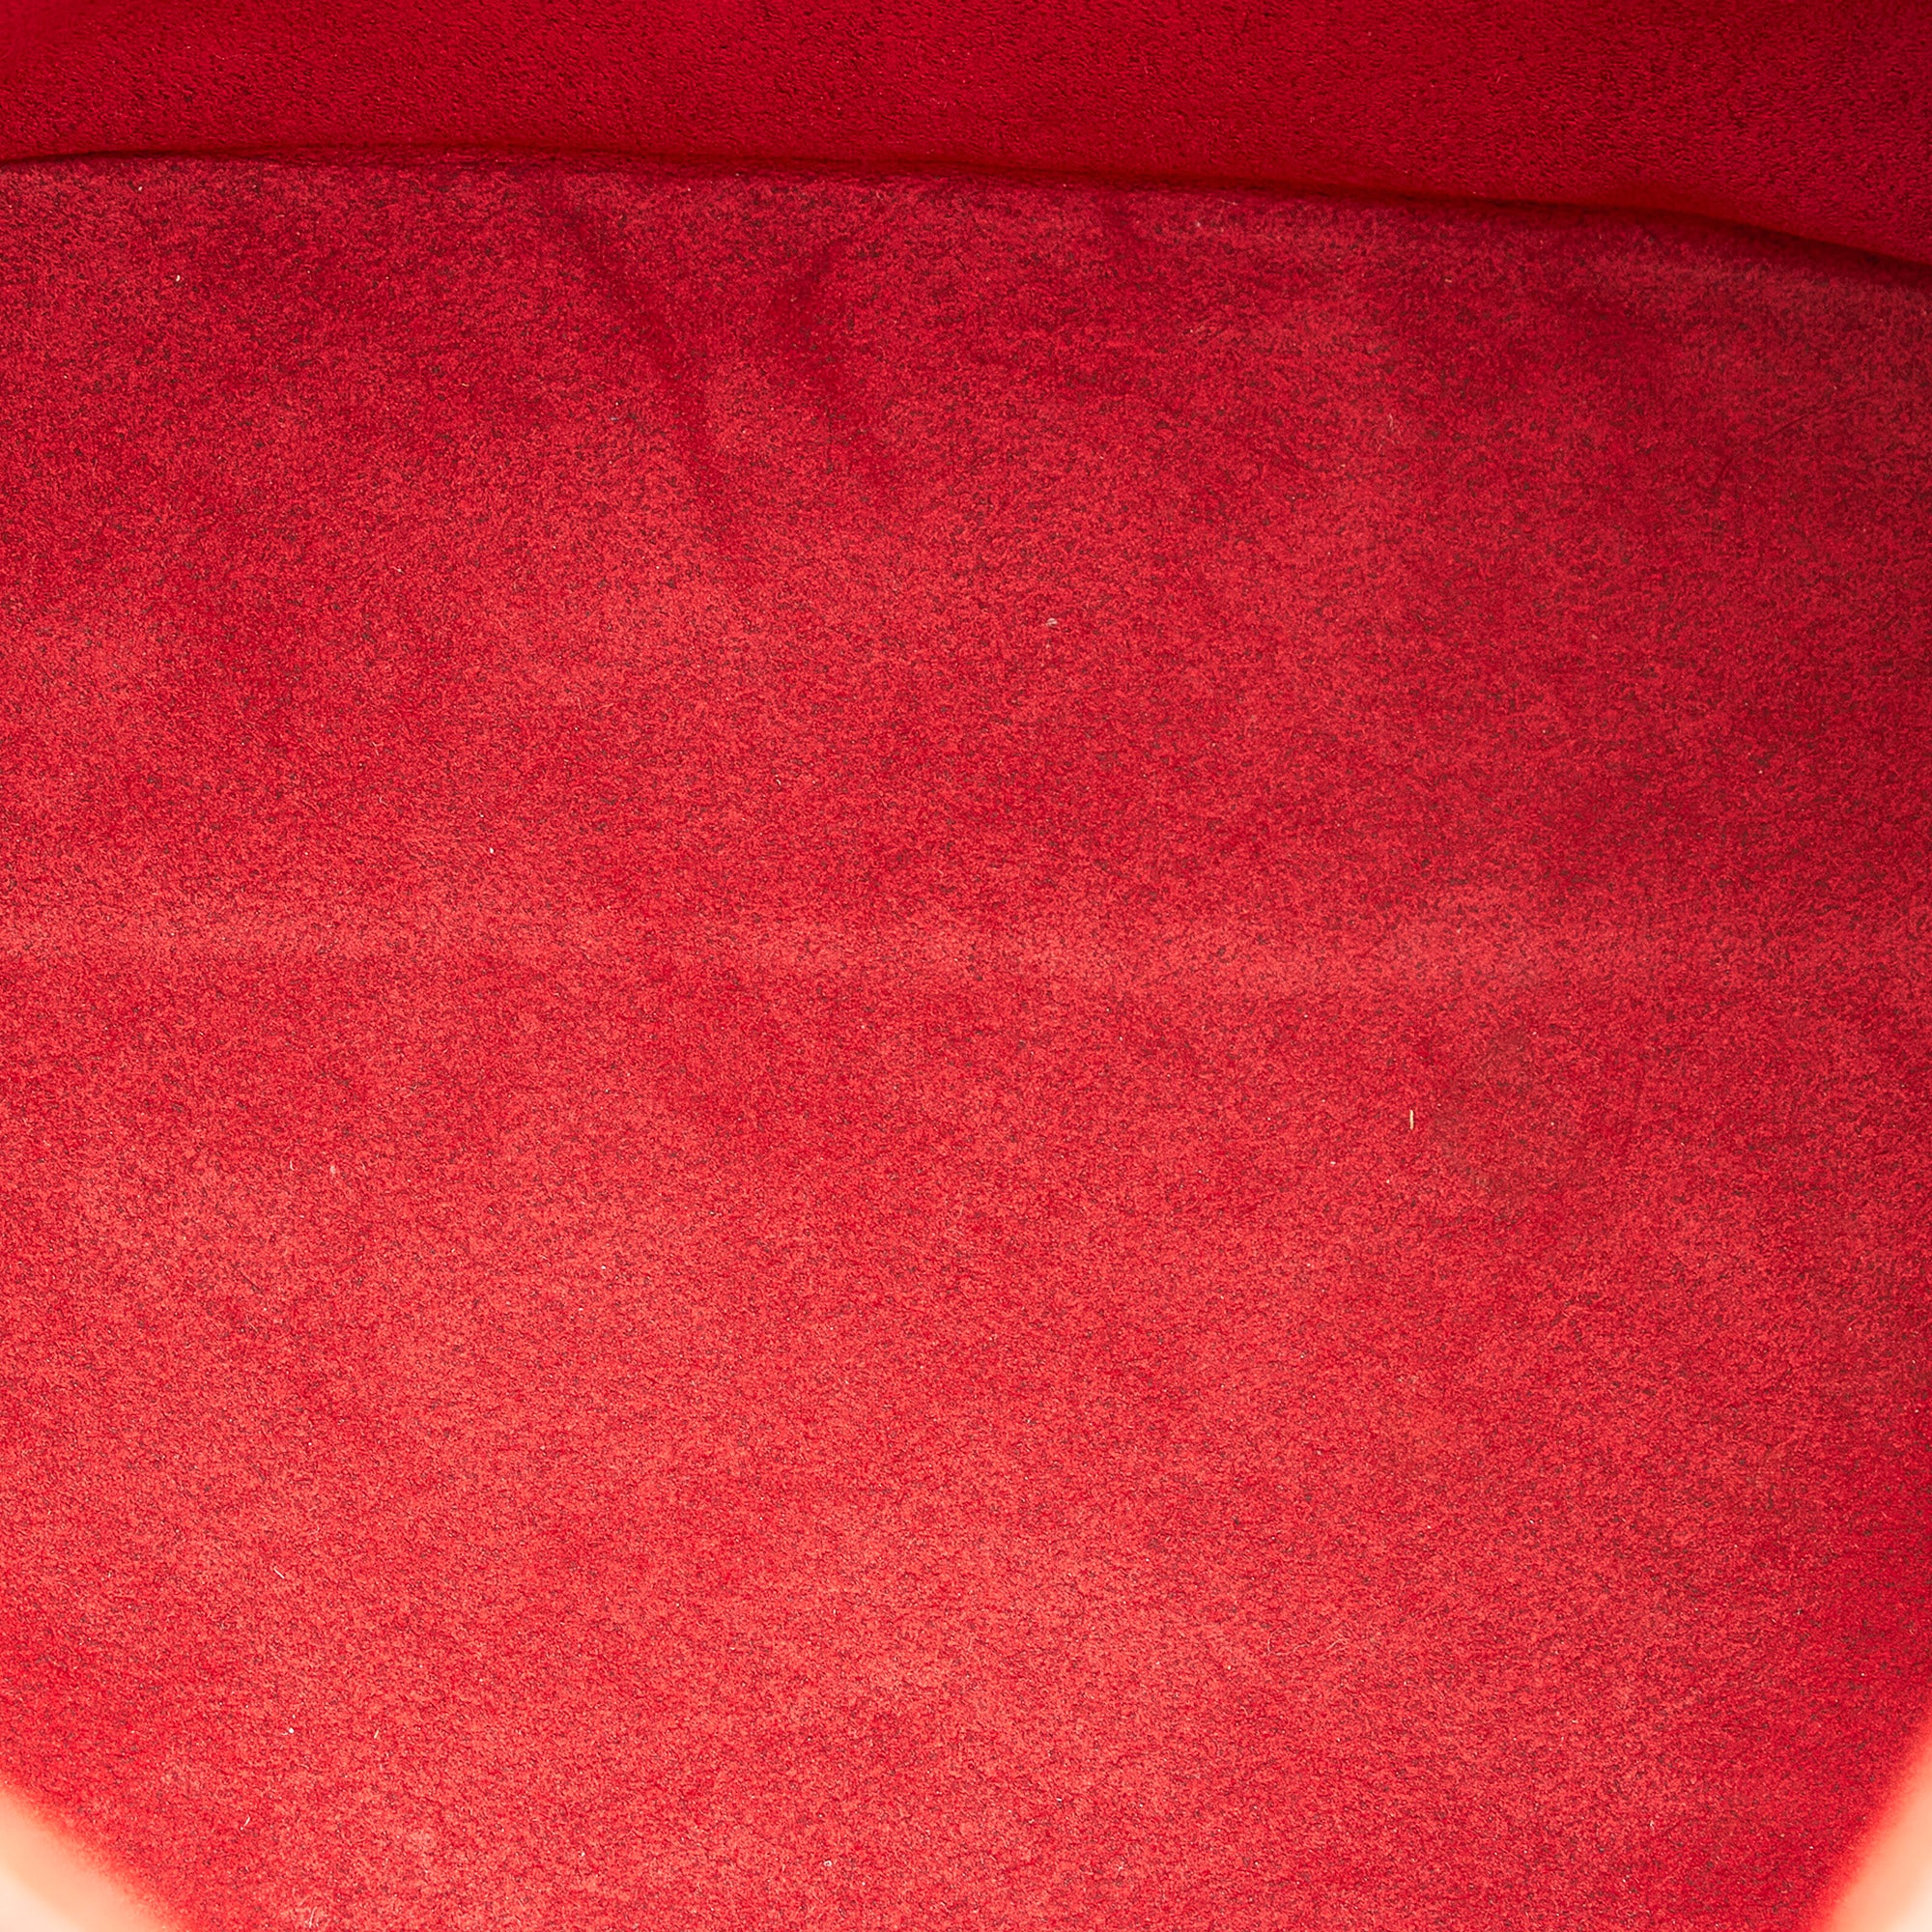 Louis Vuitton Red Epi Leather Petit Noé Bag, myGemma, SG